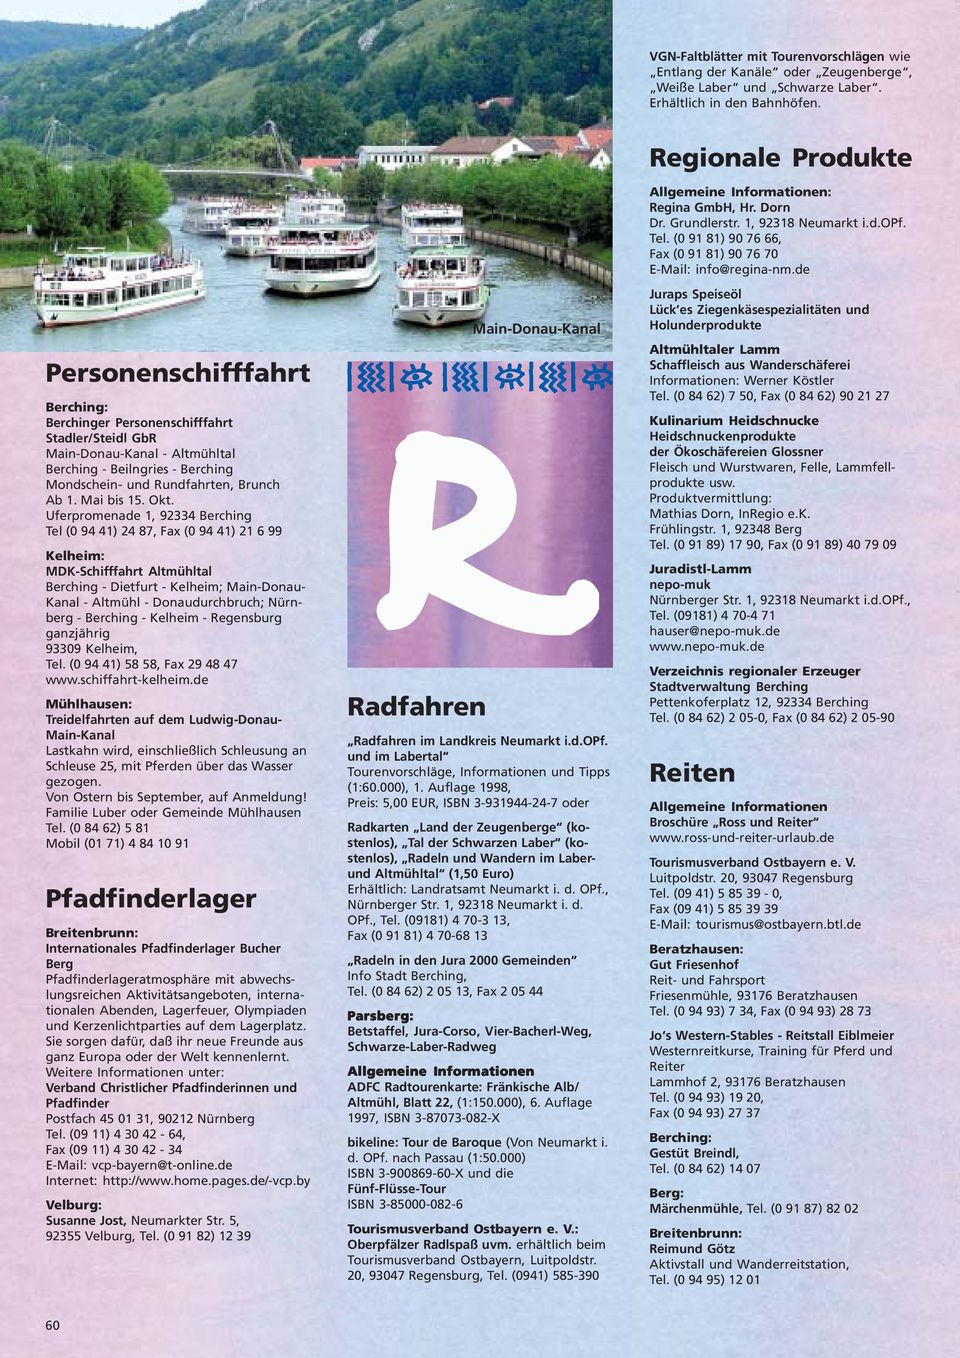 Uferpromenade 1, 92334 Berching Tel (0 94 41) 24 87, Fax (0 94 41) 21 6 99 Kelheim: MDK-Schifffahrt Altmühltal Berching - Dietfurt - Kelheim; Main-Donau- Kanal - Altmühl - Donaudurchbruch; Nürnberg -